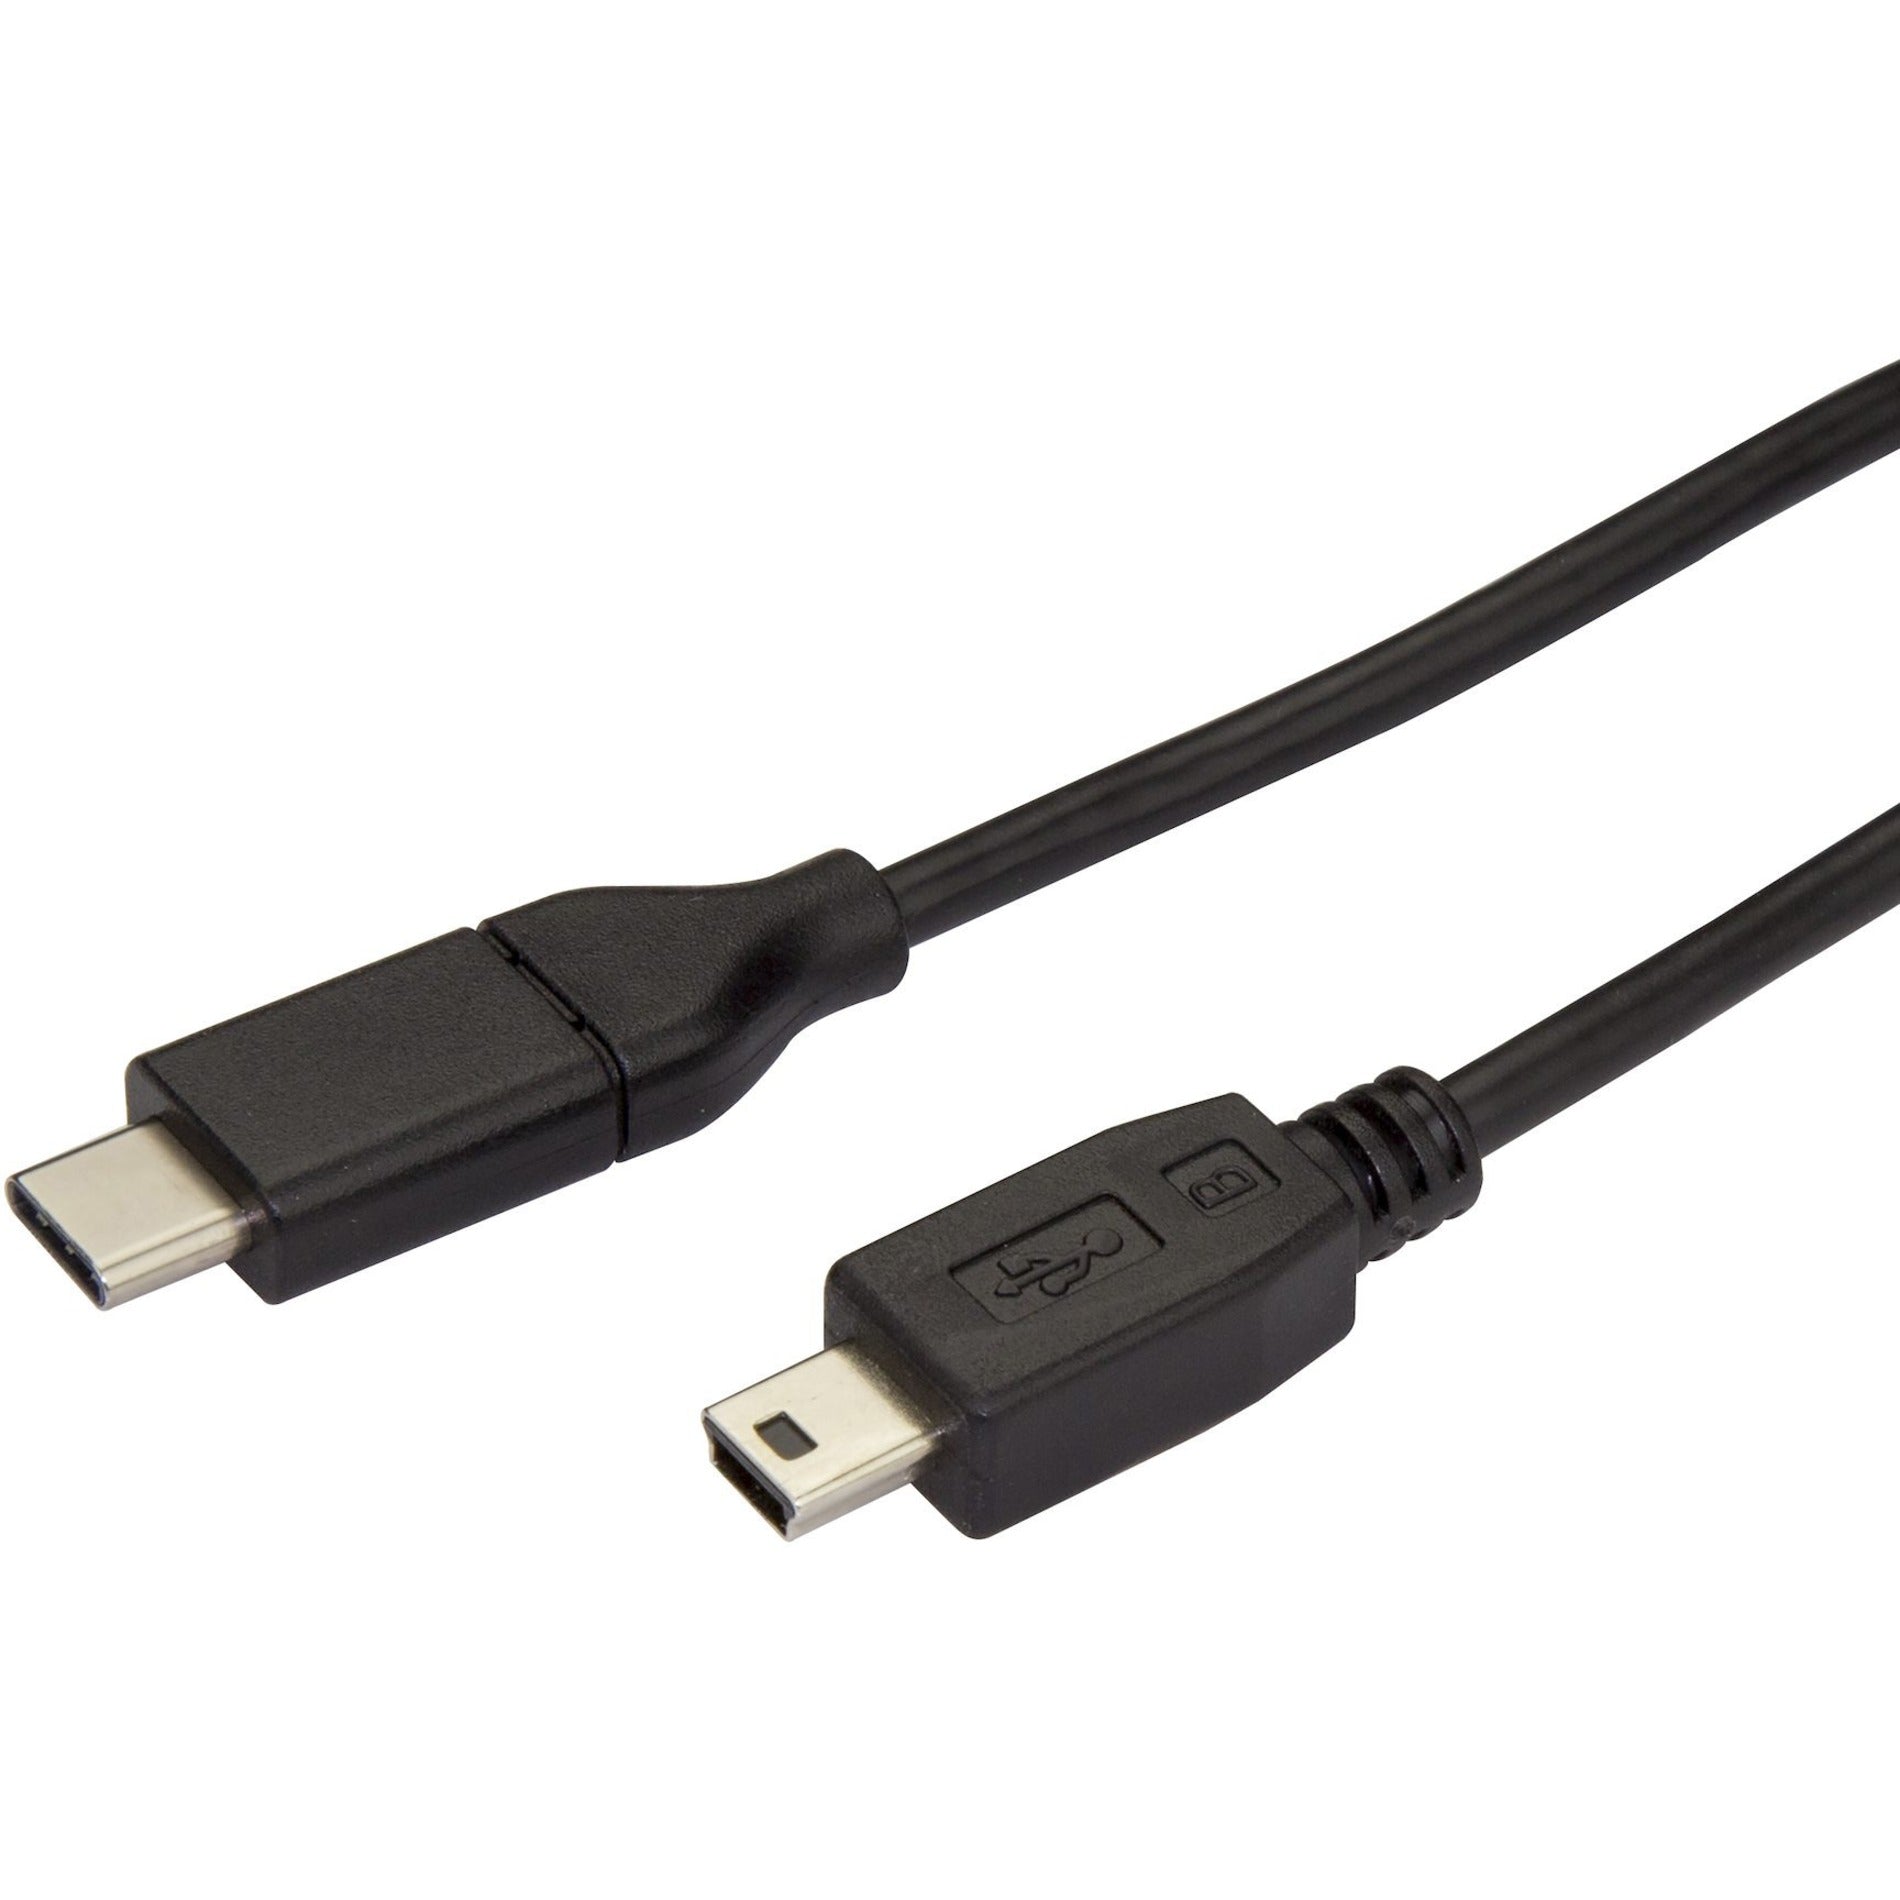 StarTech.com USB2CMB2M USB-C to Mini-USB Cable - M/M - 2m 6ft - USB 2.0, Black, 480 Mbit/s